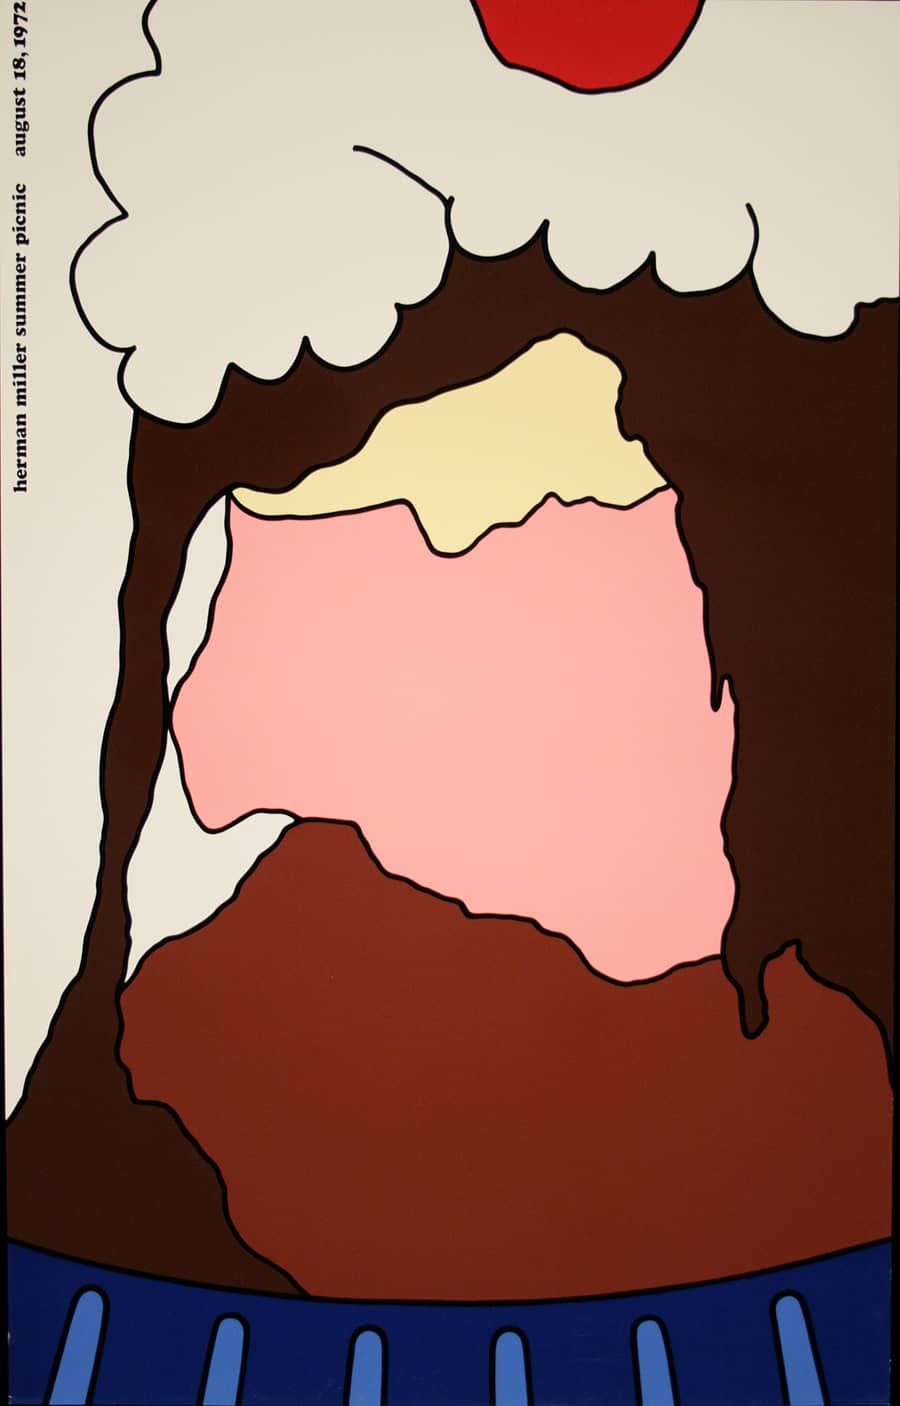 Original Herman Miller Poster 1972 by Steve Frykholm - Ice Cream Sundae